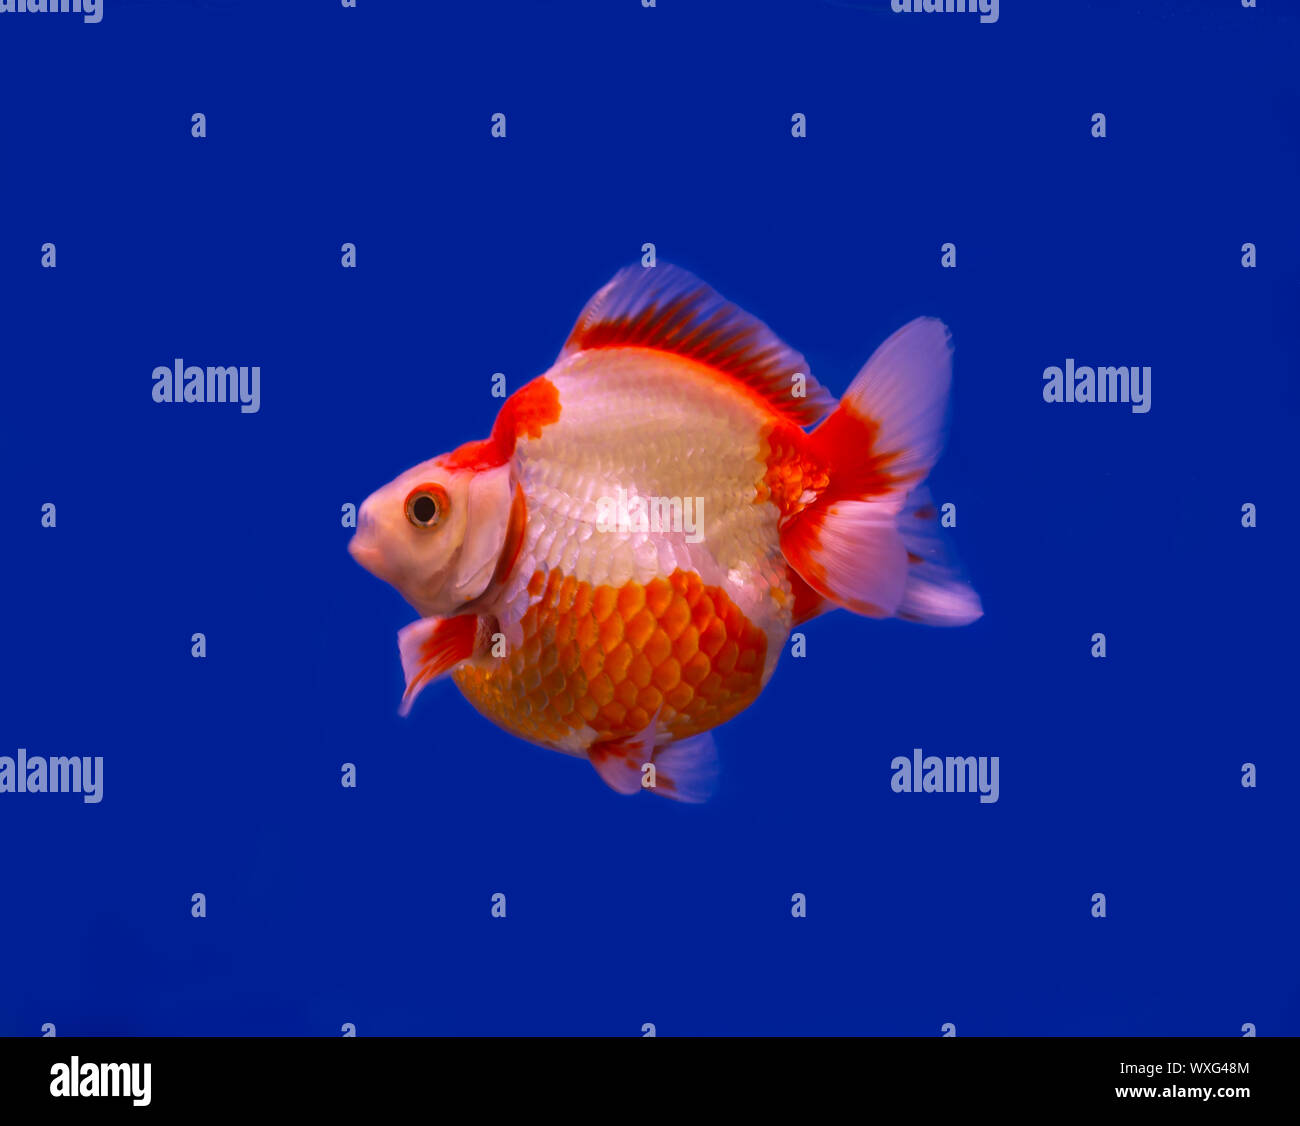 Red and white Ryukin goldfish on blue background Stock Photo